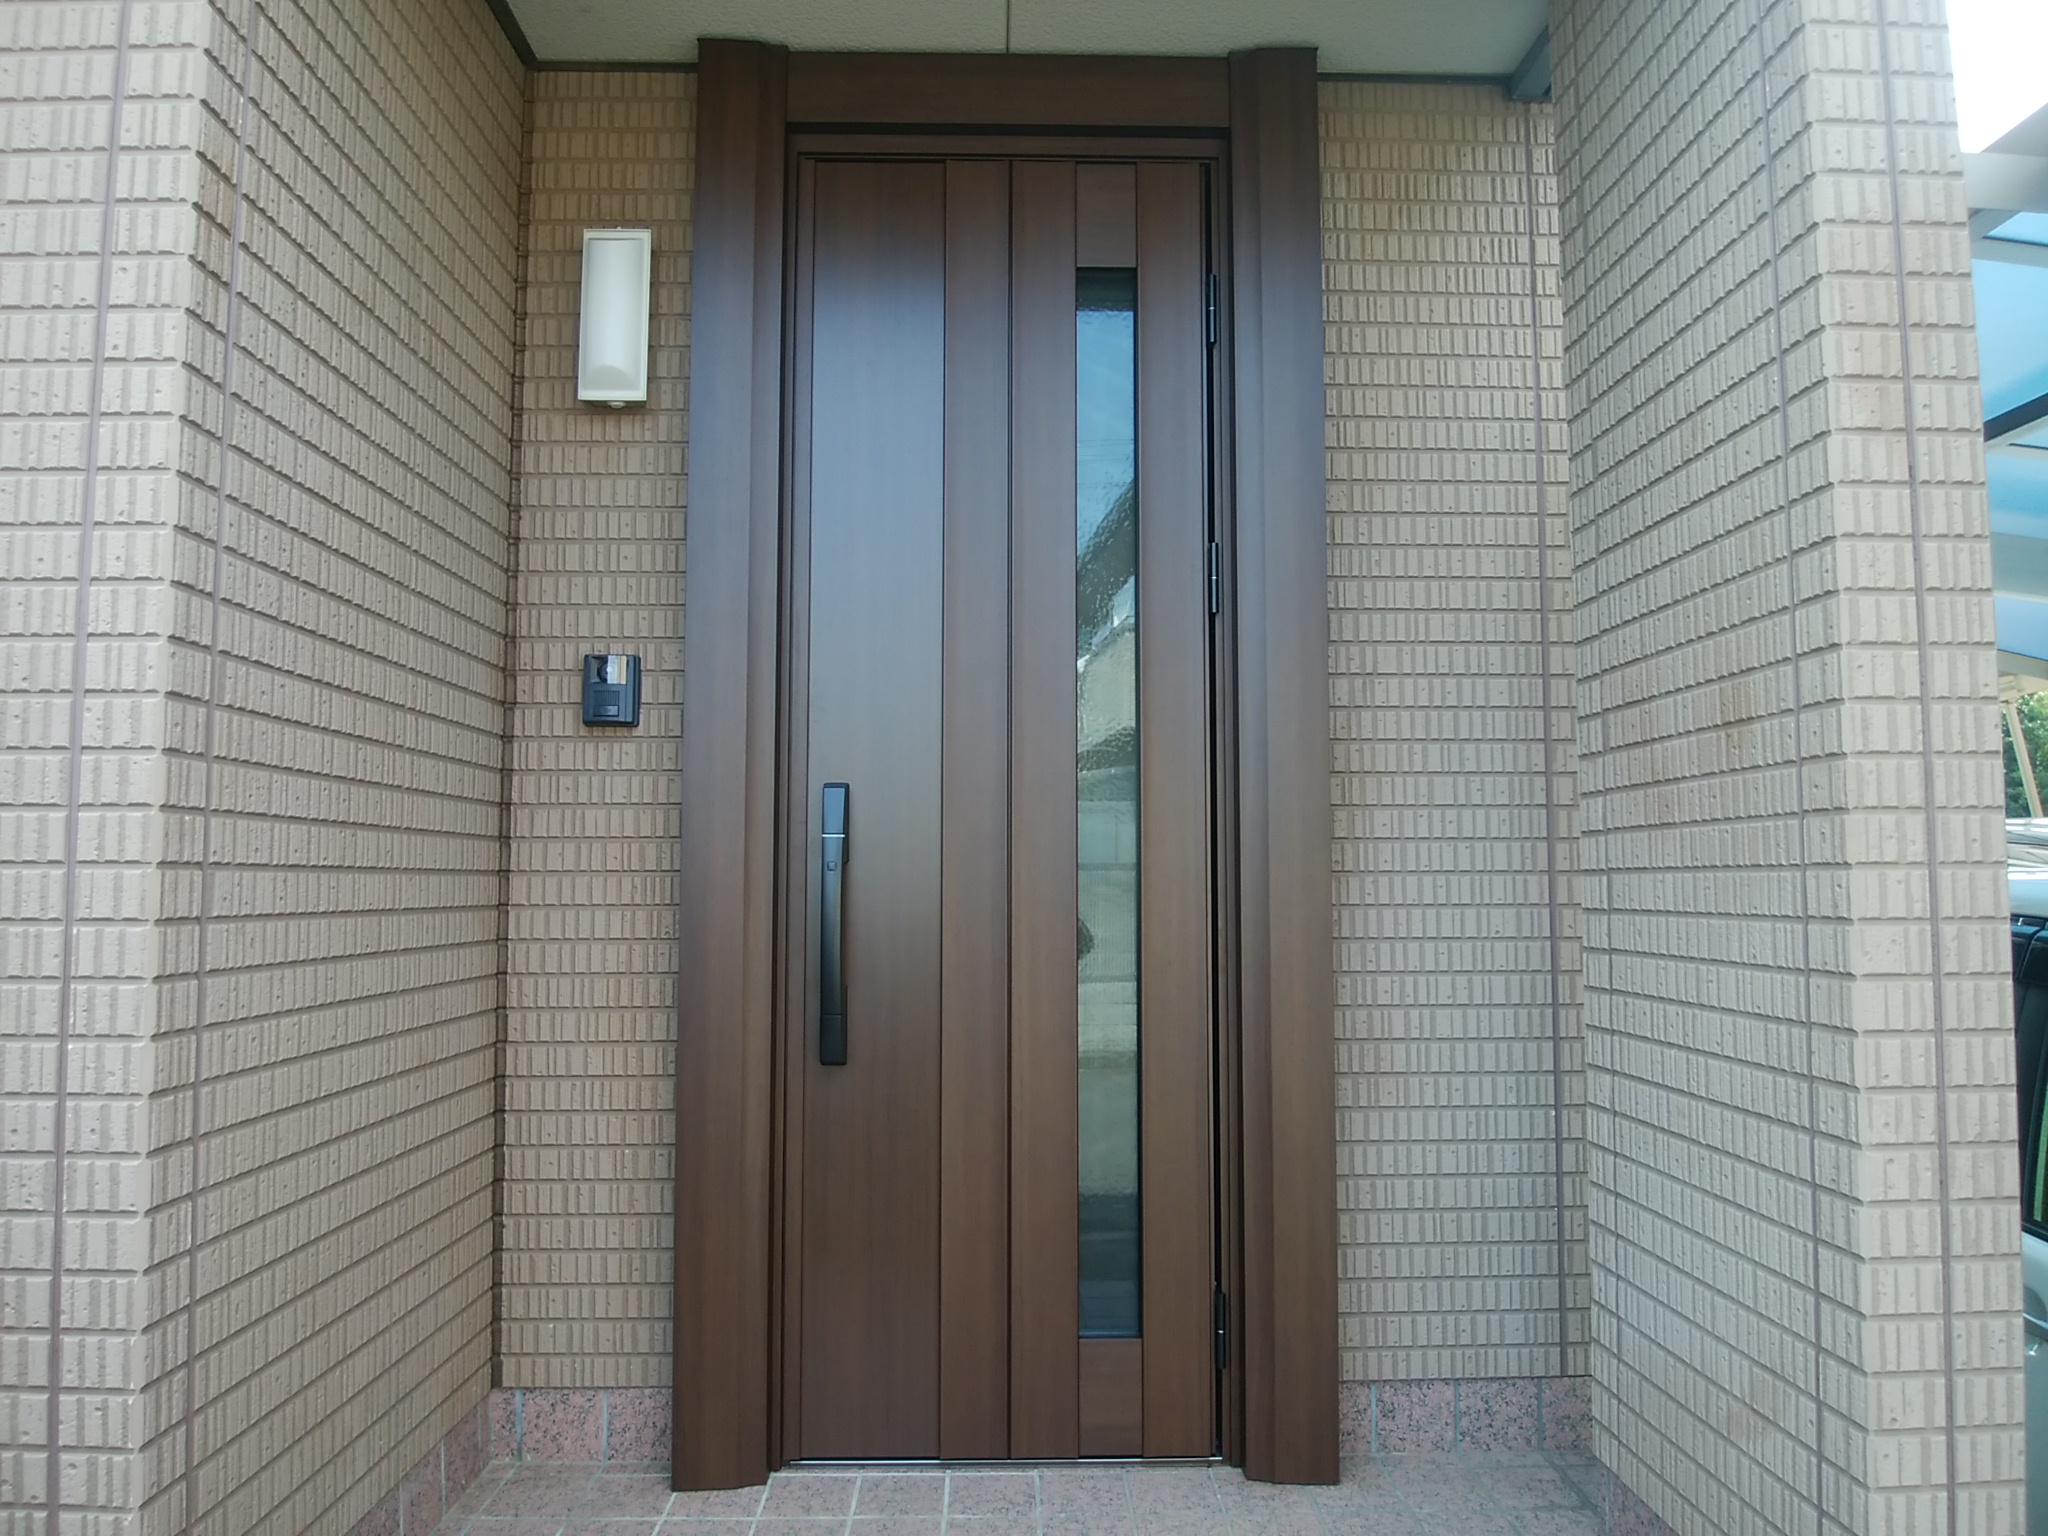 積水ハウス の玄関ドアをカバー工法で交換 外額縁155でしっかりカバー Ykkapドアリモn05t 玄関ドアのリフォームなら玄関ドアマイスターへお任せください